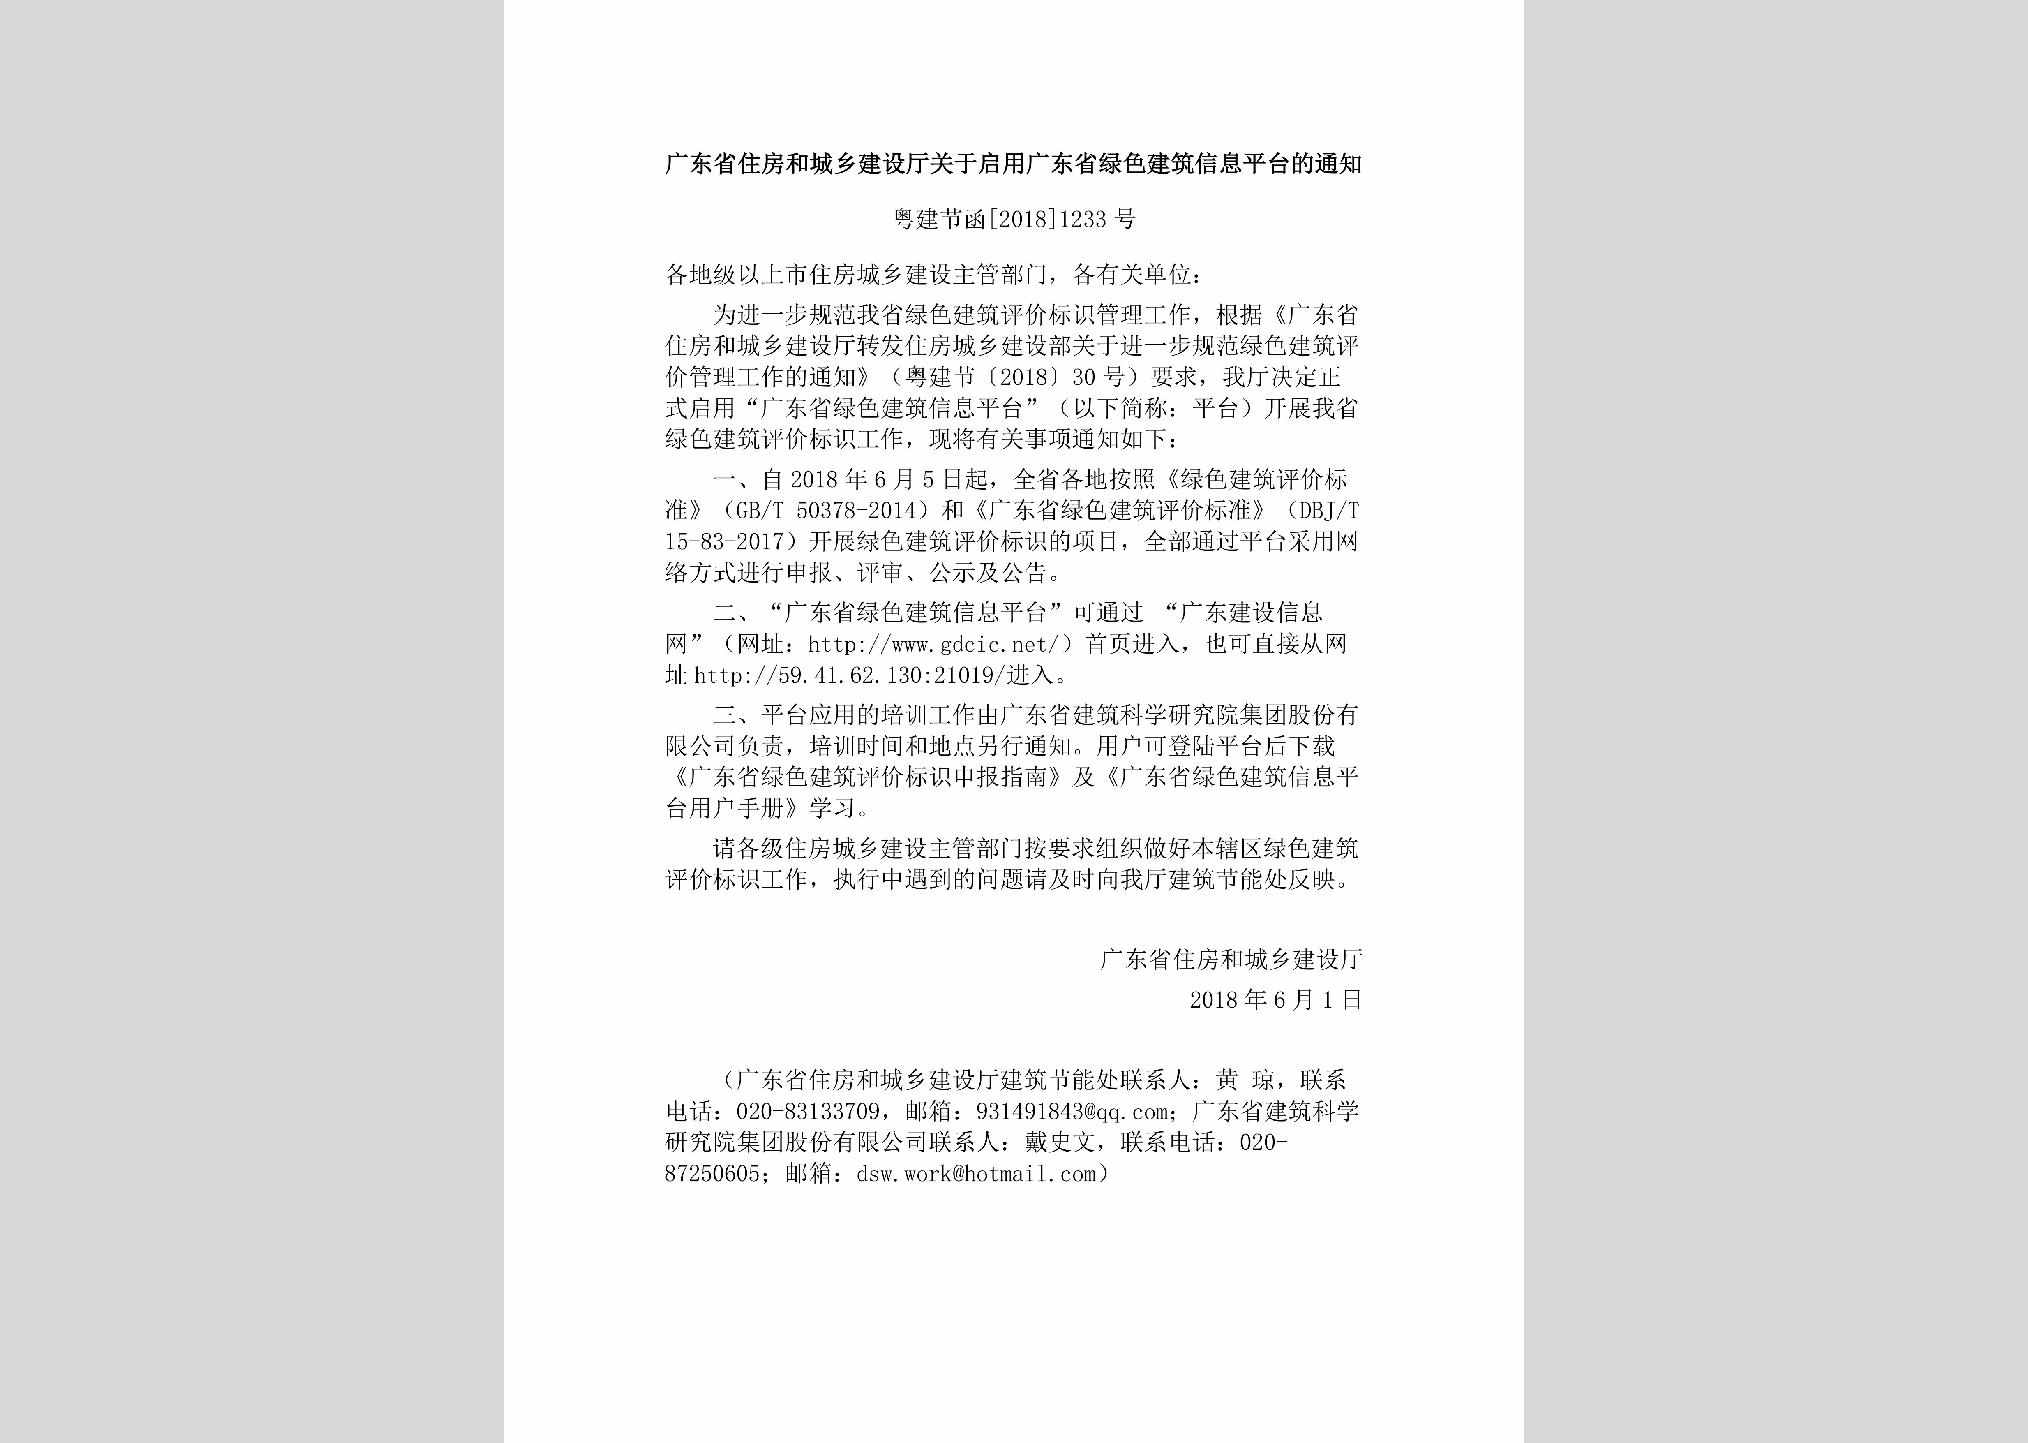 粤建节函[2018]1233号：广东省住房和城乡建设厅关于启用广东省绿色建筑信息平台的通知